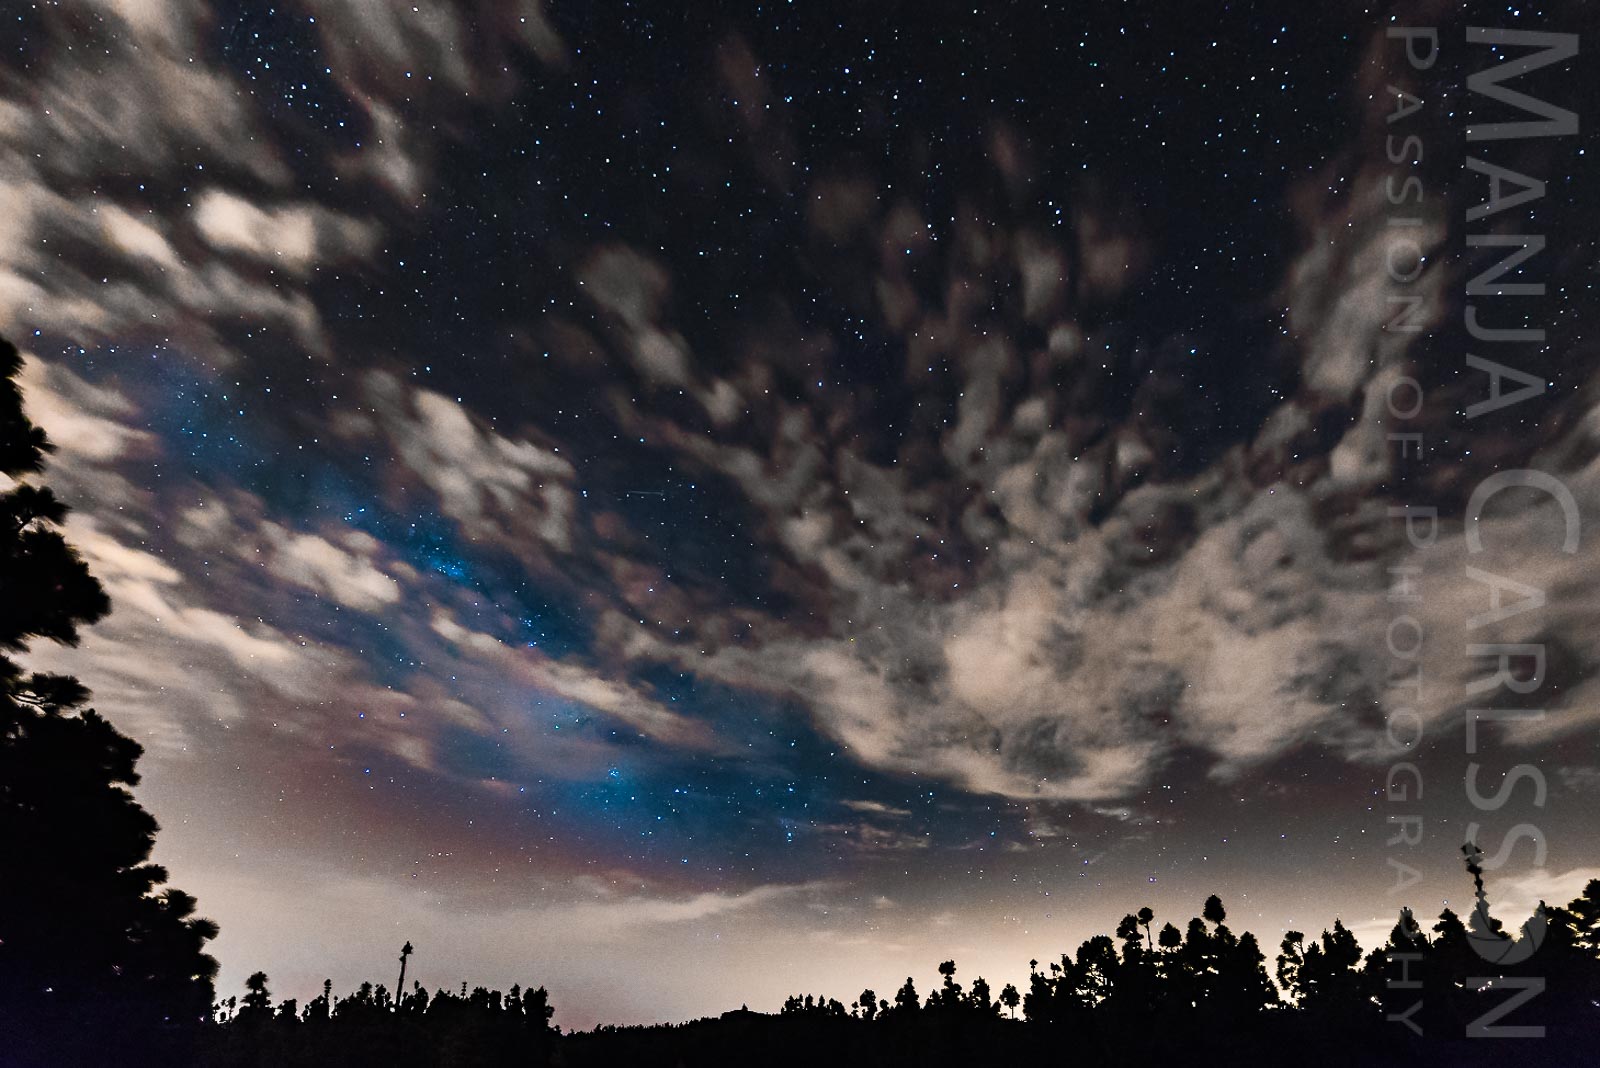 Spiel aus Wolken, Sternenhimmel mit aufgehender Milchstraße